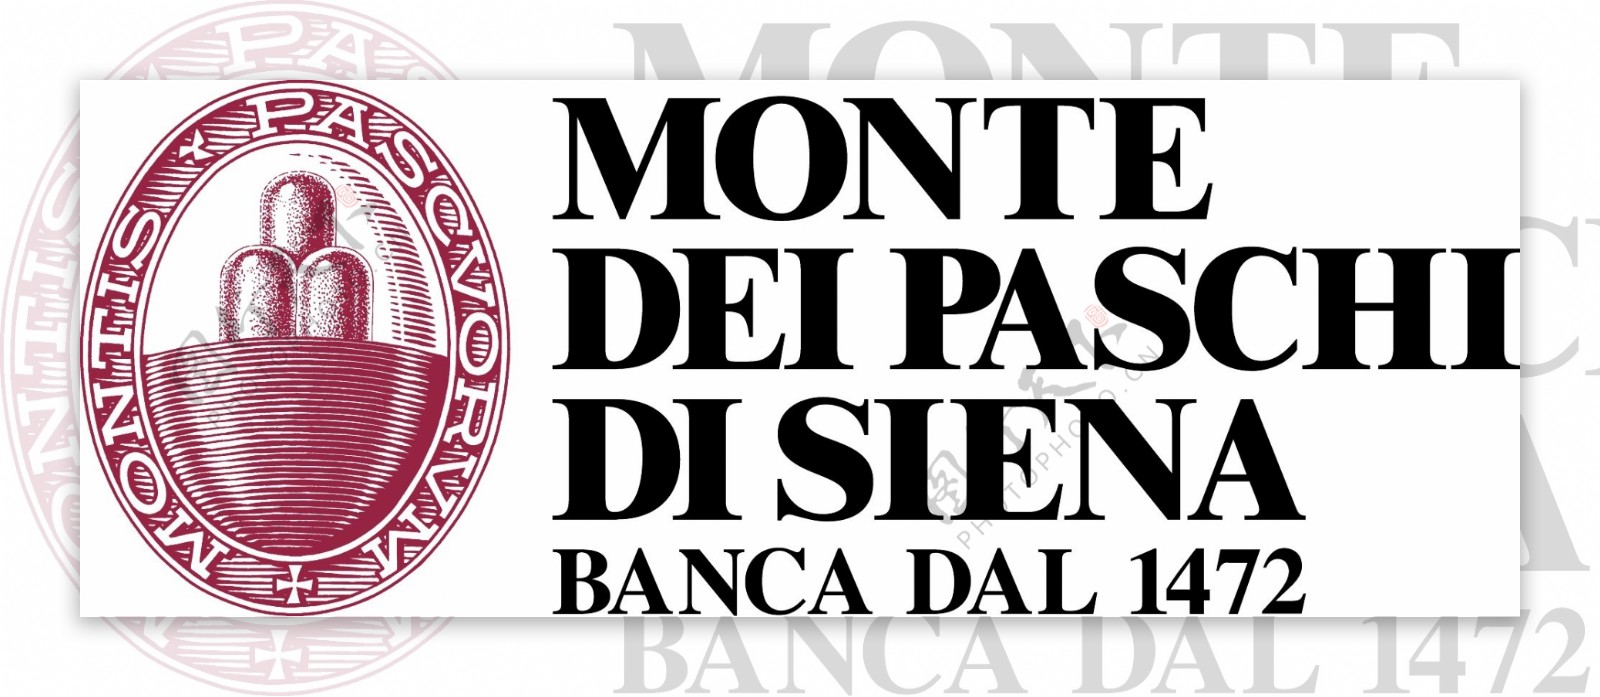 2010全球金融信贷银行业标志设计